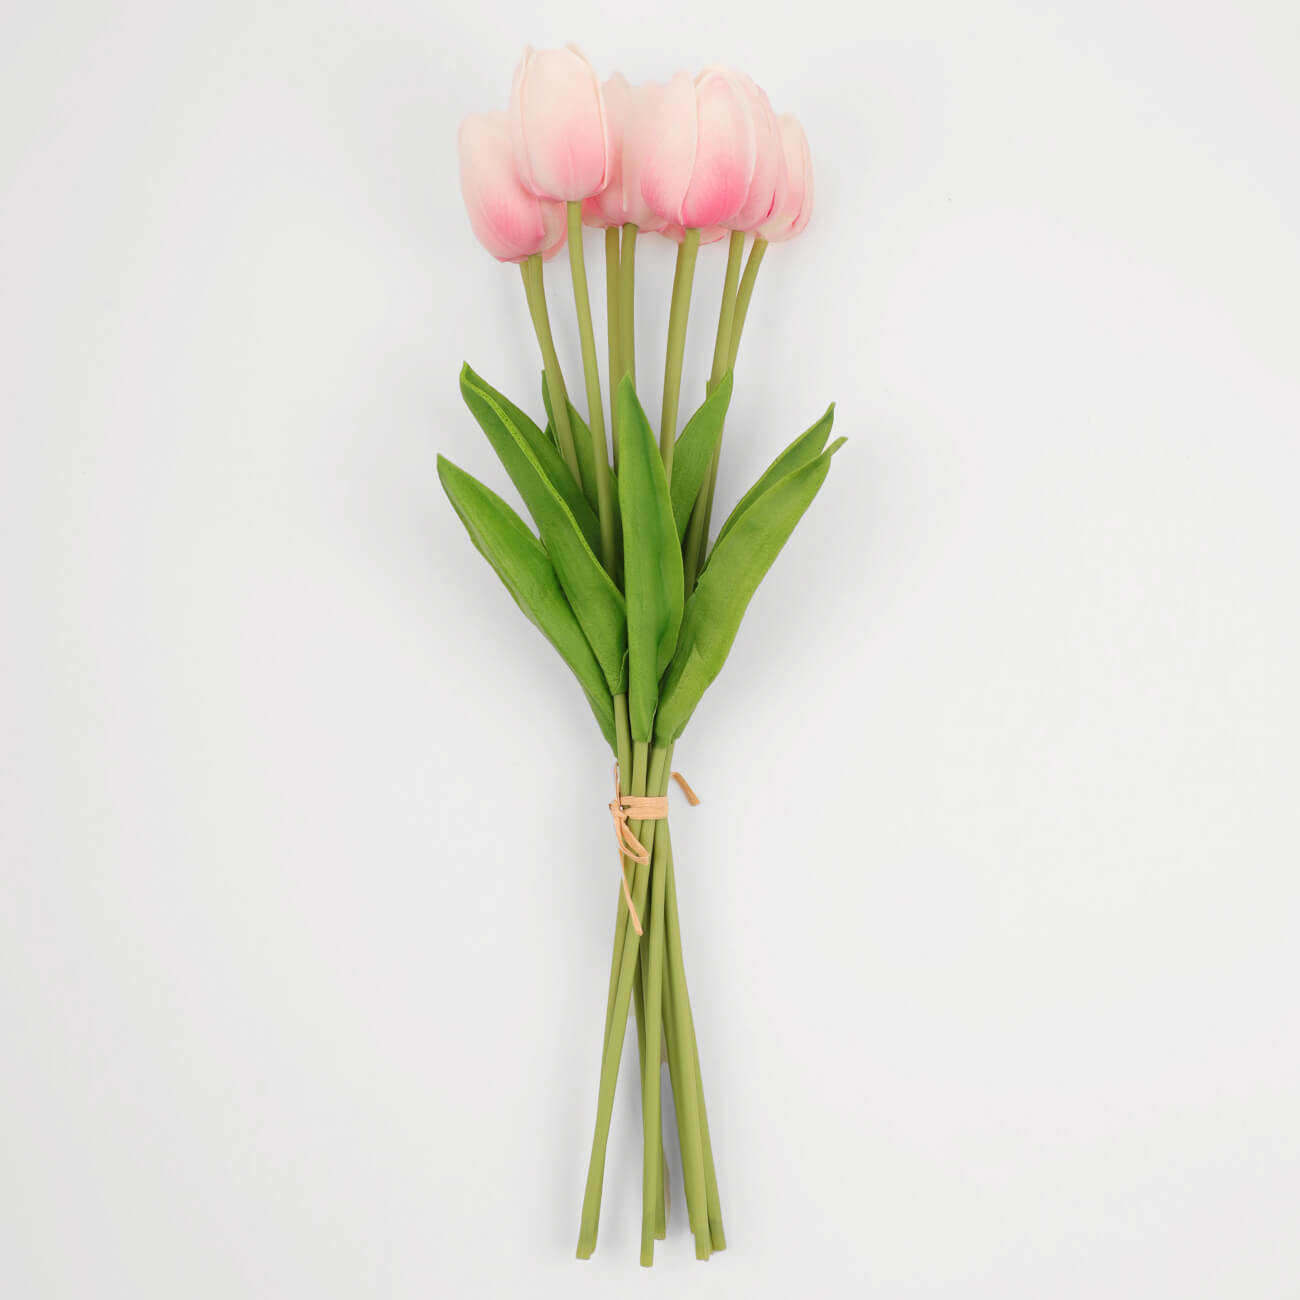 Букет искусственный, 35 см, полиуретан, Розовые тюльпаны, Tulip garden букет искусственный 21 см в вазе полиуретан стекло розовые тюльпаны tulip garden